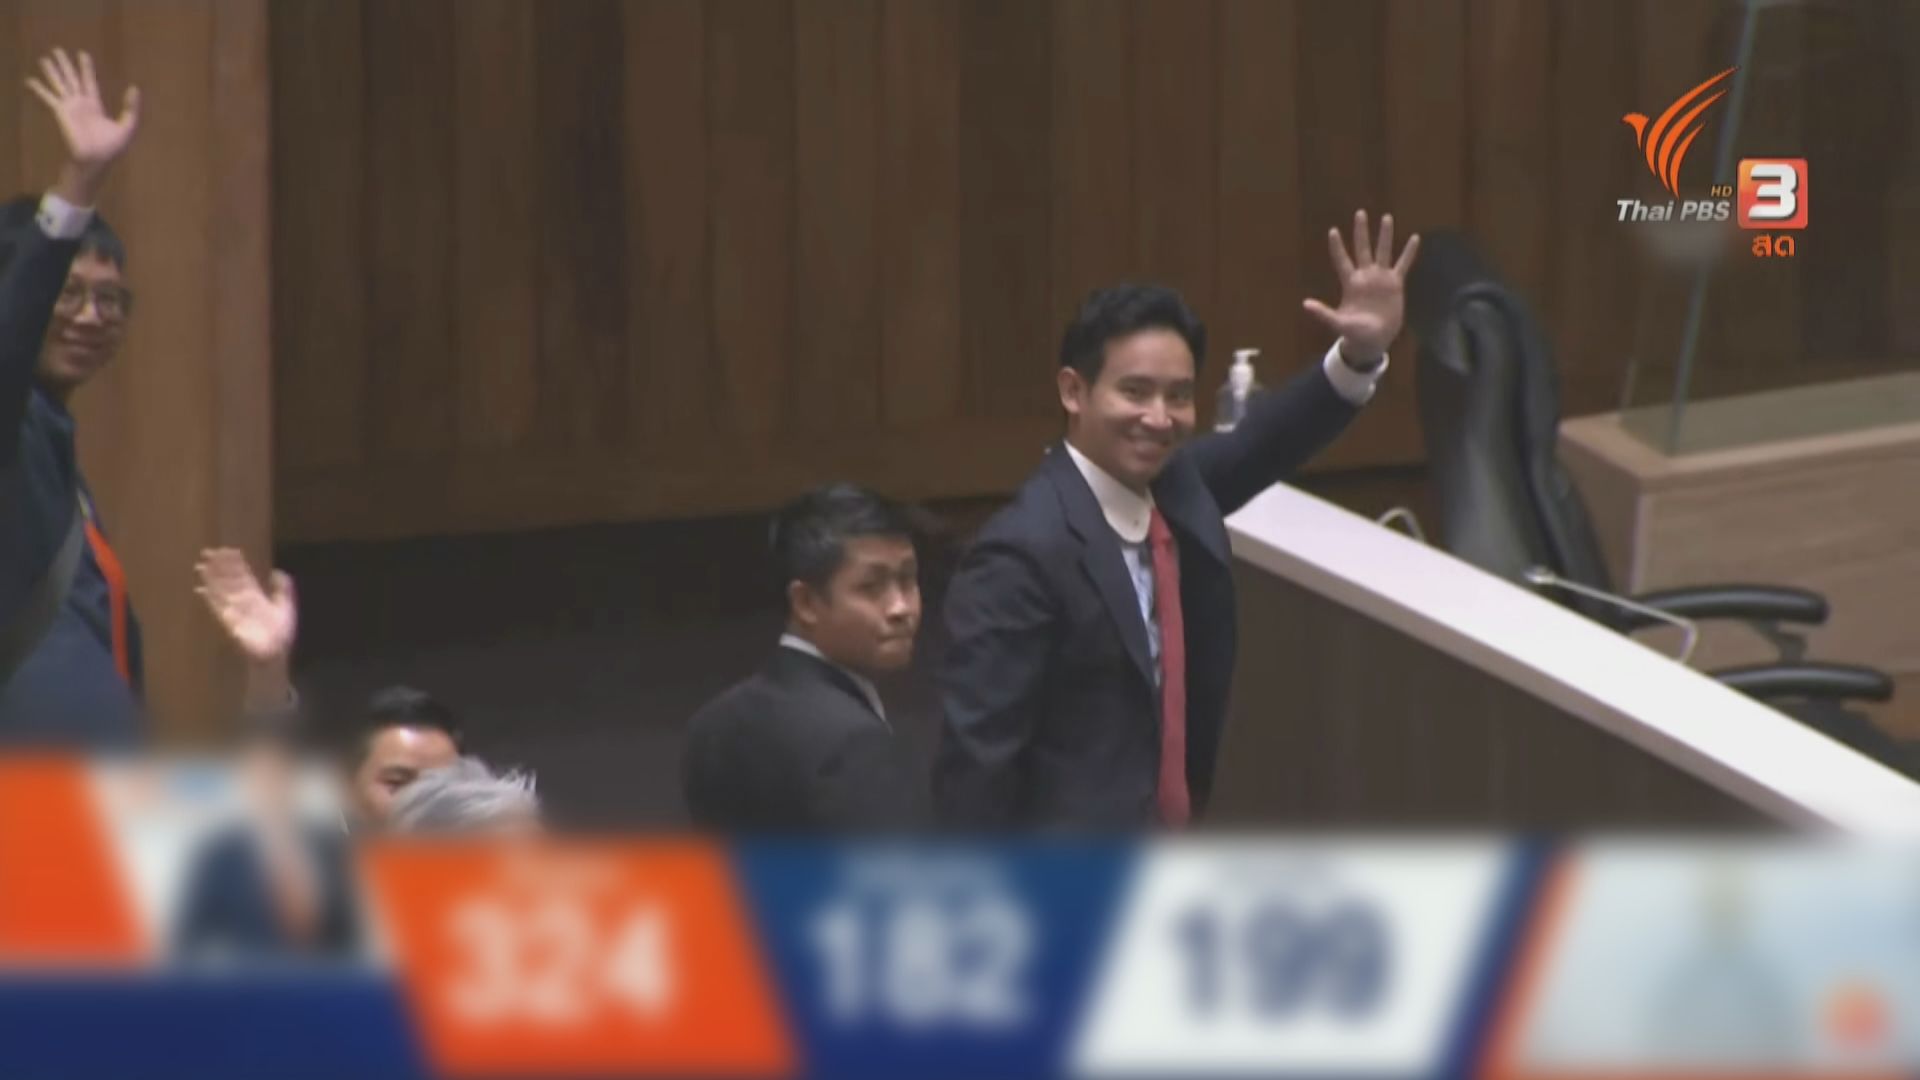 國會支持票不過半 皮塔強調不放棄競逐泰國總理